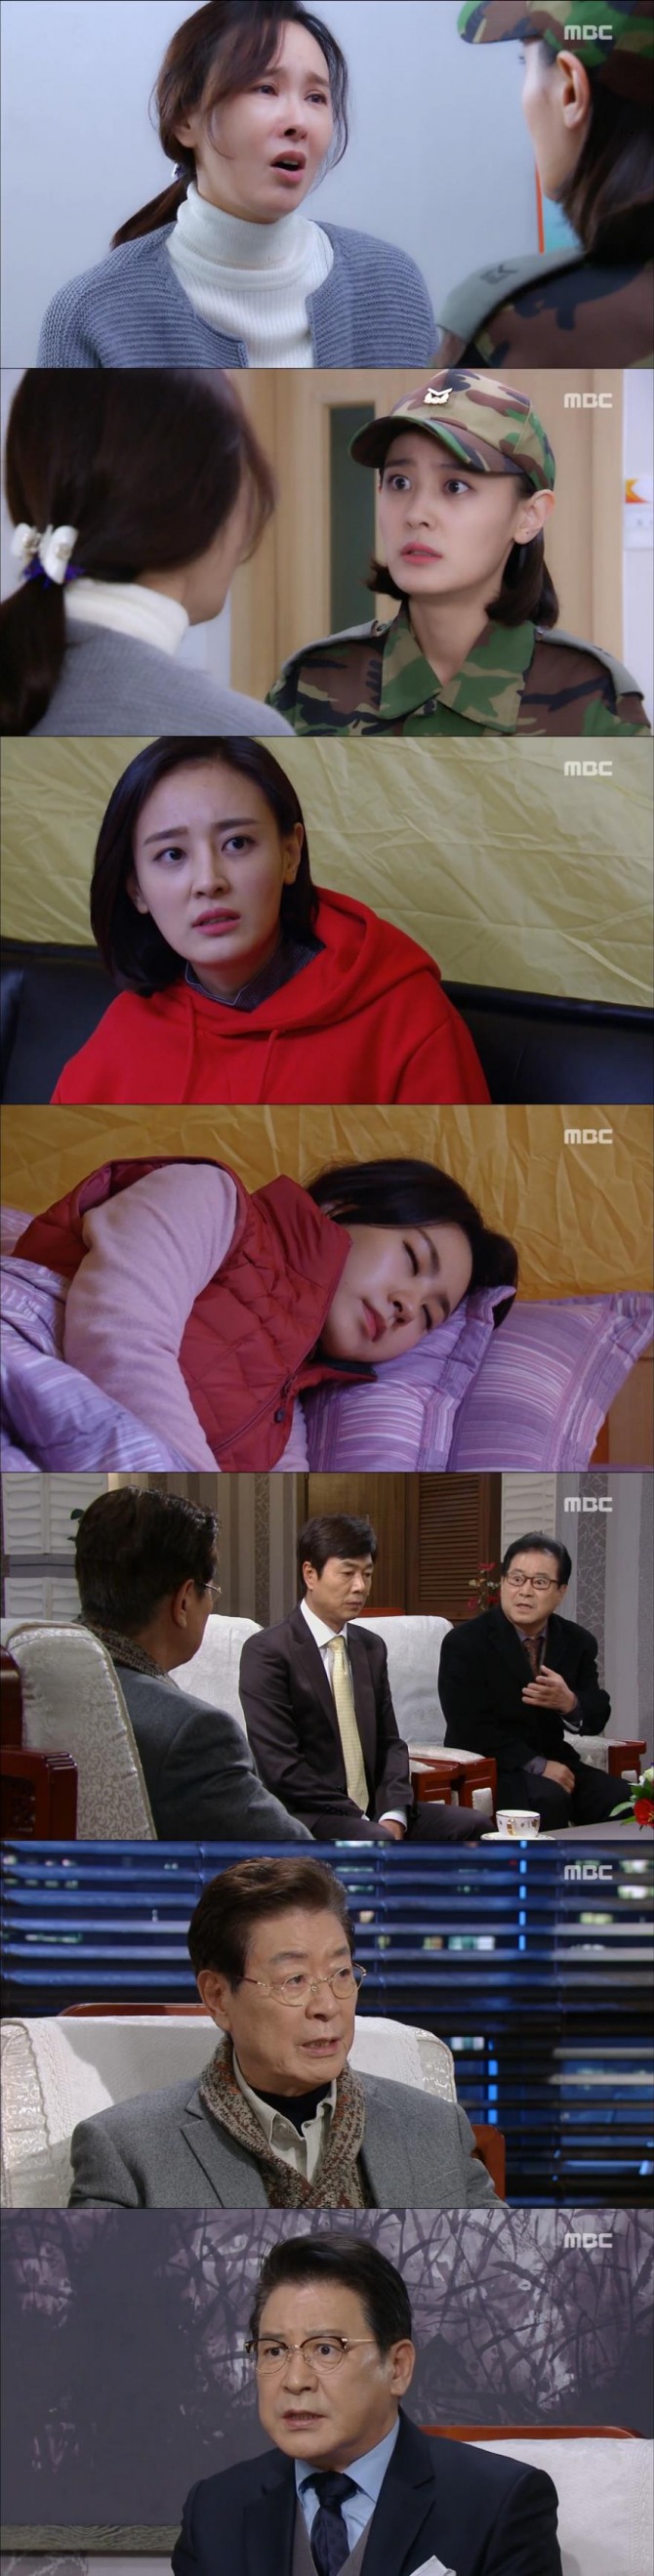 18일 방송된 MBC 아침드라마 '언제나 봄날'에서는 보현(이유주)의 친엄마가 주세은(김소혜)라는 충격적인 사실이 드러났다./사진=MBC 방송 캡처